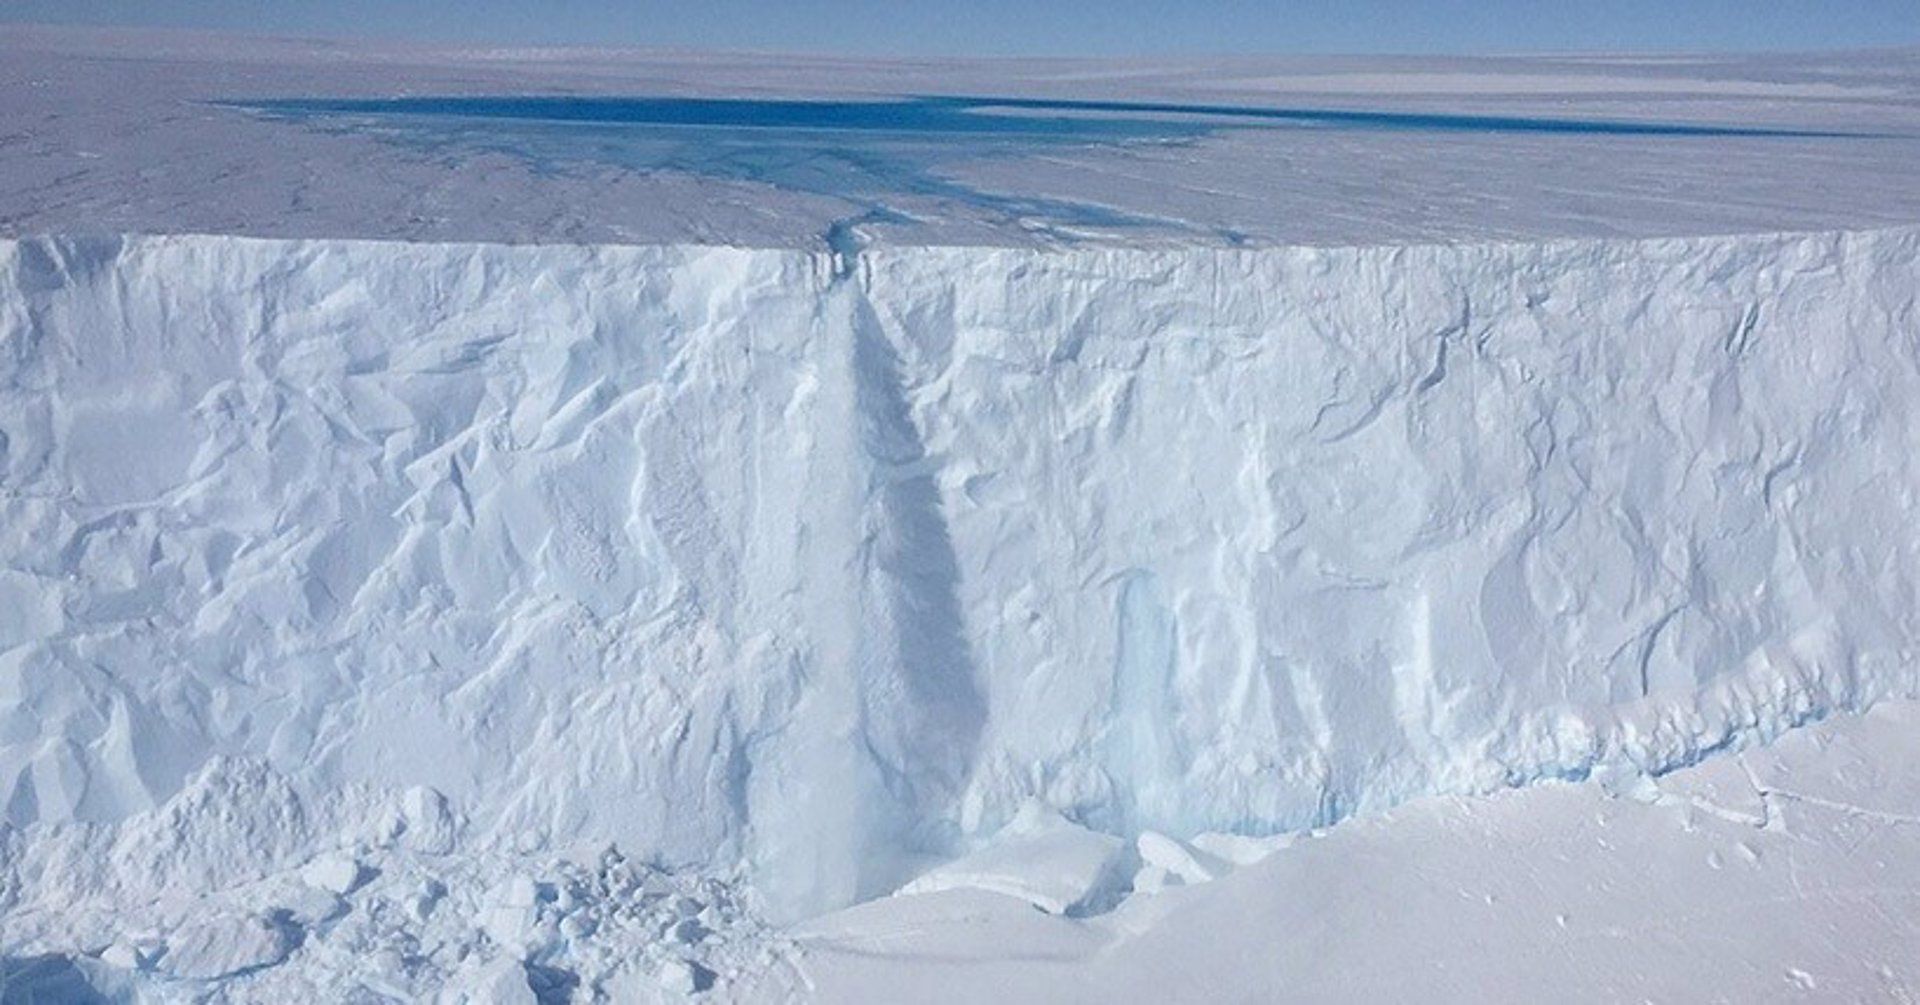 Capa de hielo de l a Antártida Oriental.  DAVE LOMAS Preocupación en la comunidad científica: la Antártida Oriental se resquebraja